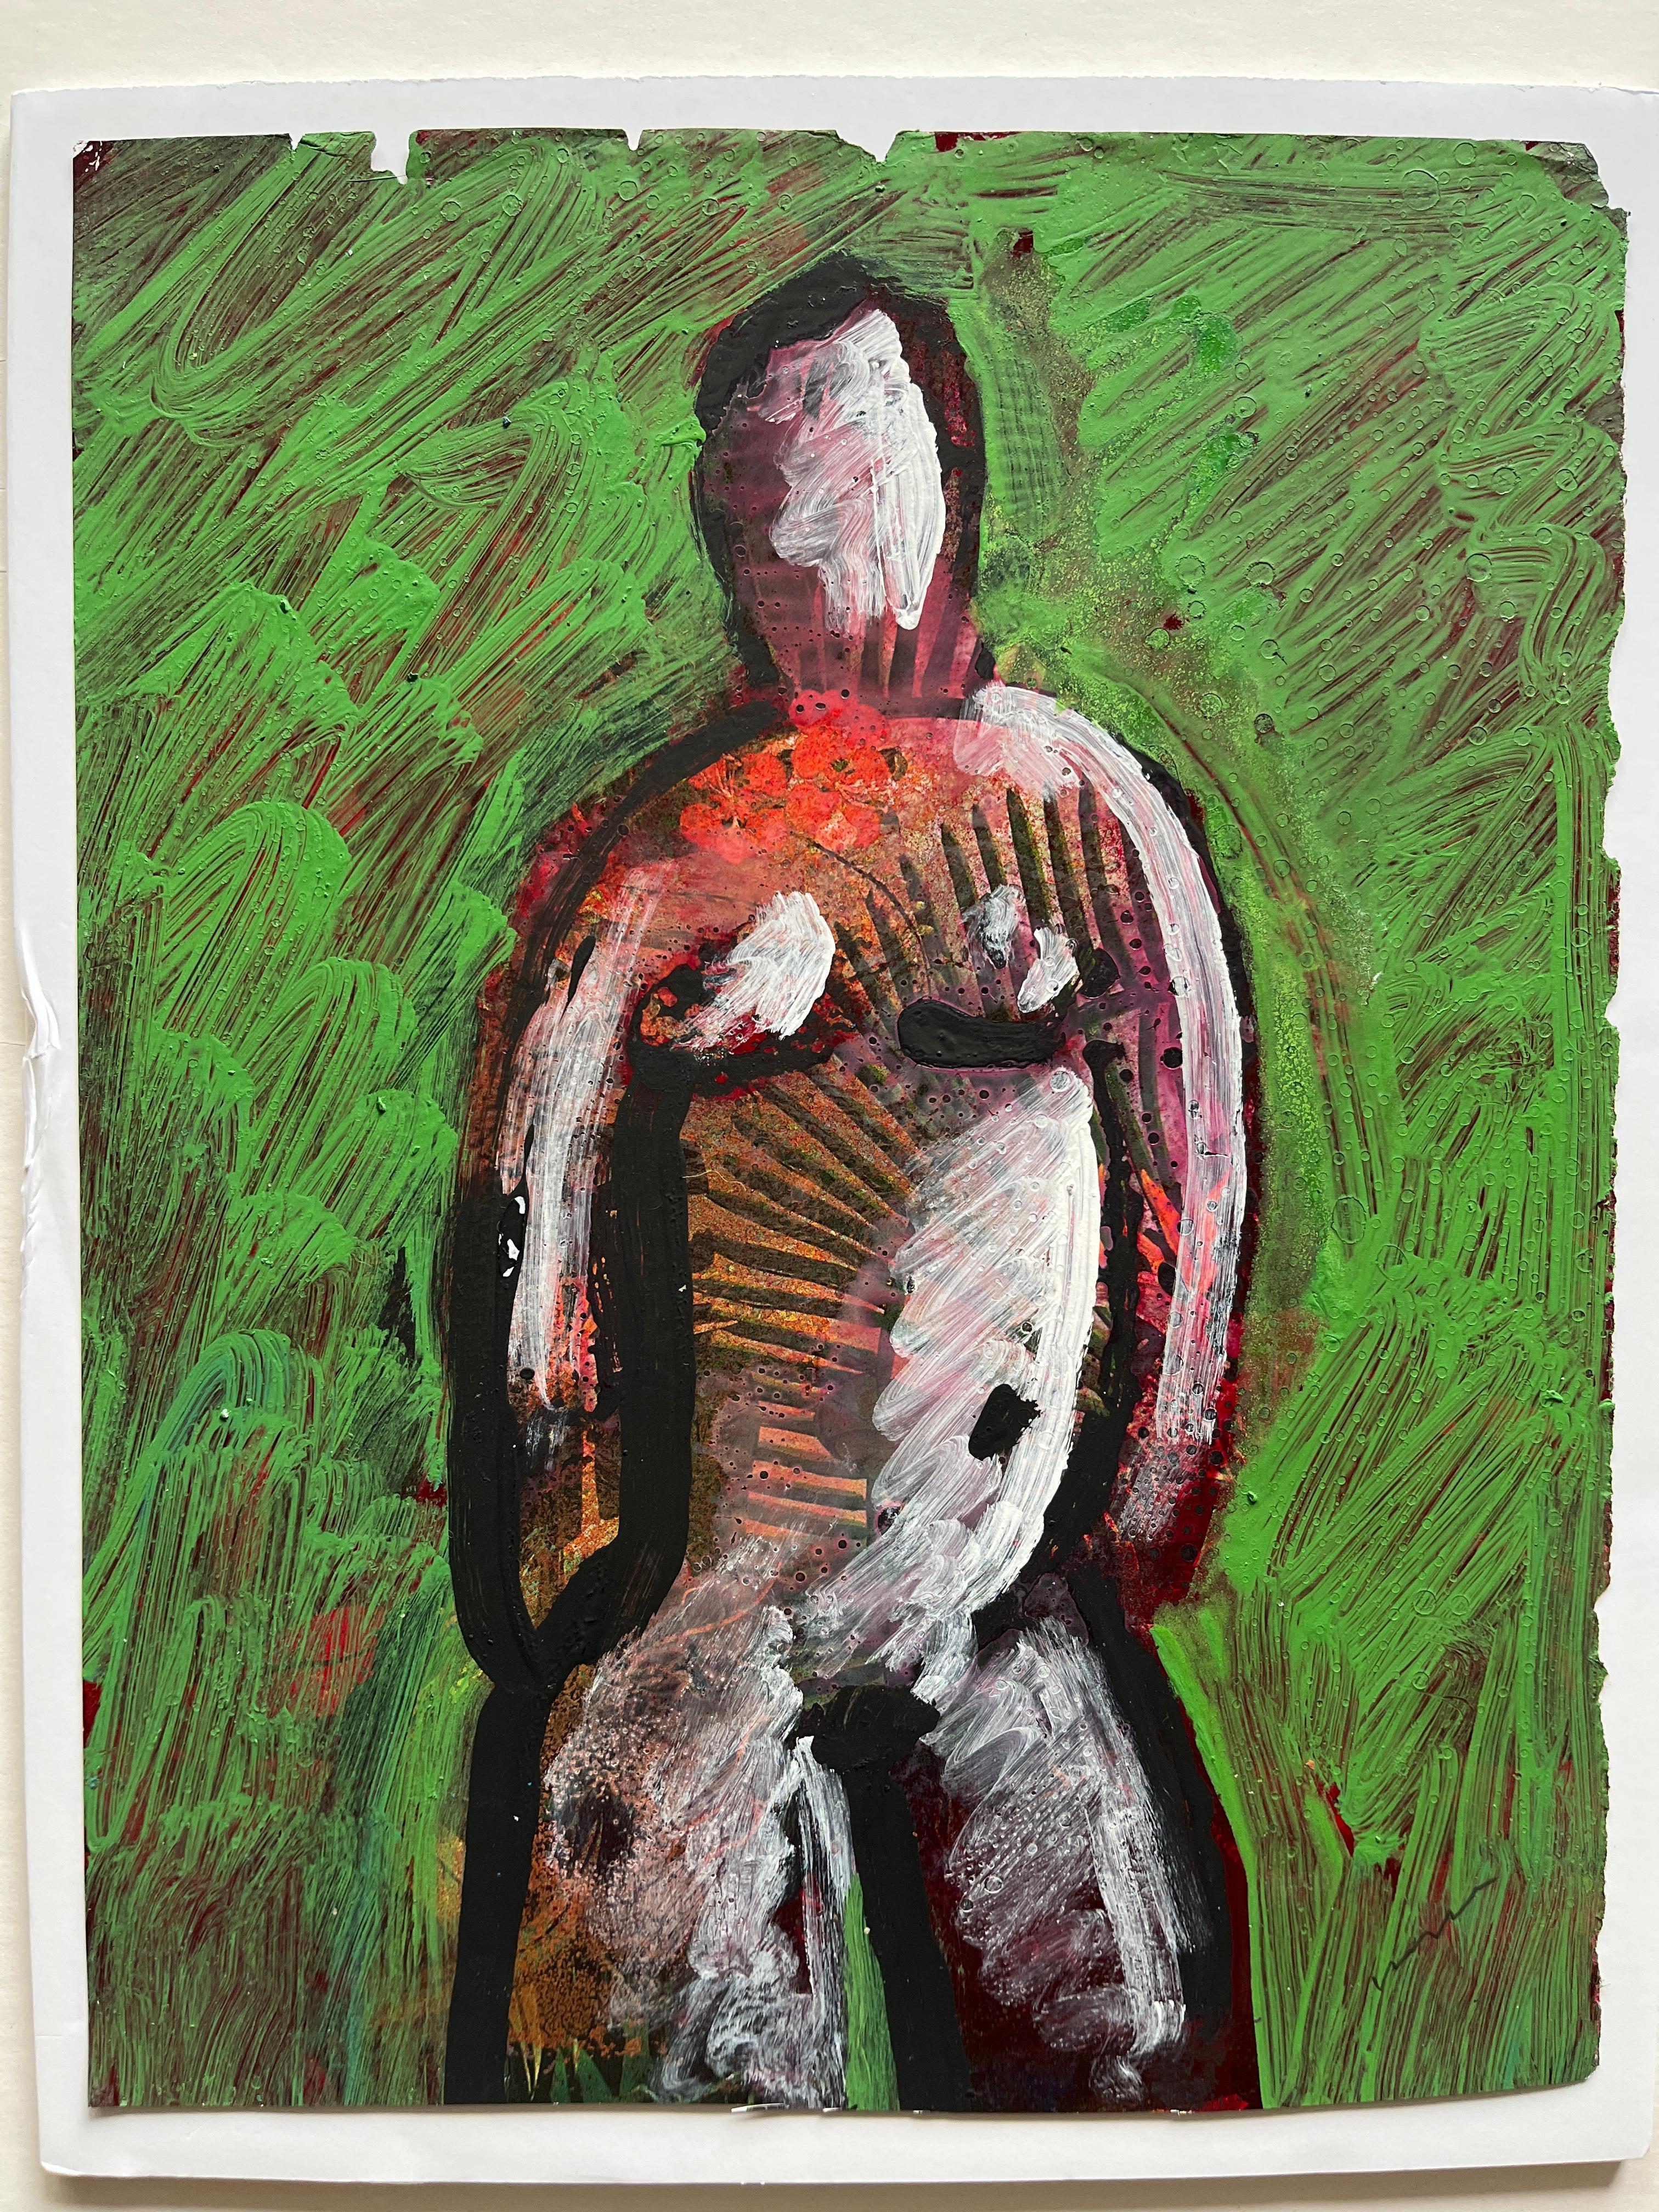 Jack Hooper
"Nu vert 2"
c. 1980s
Peinture acrylique sur page de magazine
9 "x11.5", cadre de galerie en bois noir, montage flottant 11 "x14".
Signé au crayon en bas à droite

L'approche artistique particulière de Hooper est illustrée par son